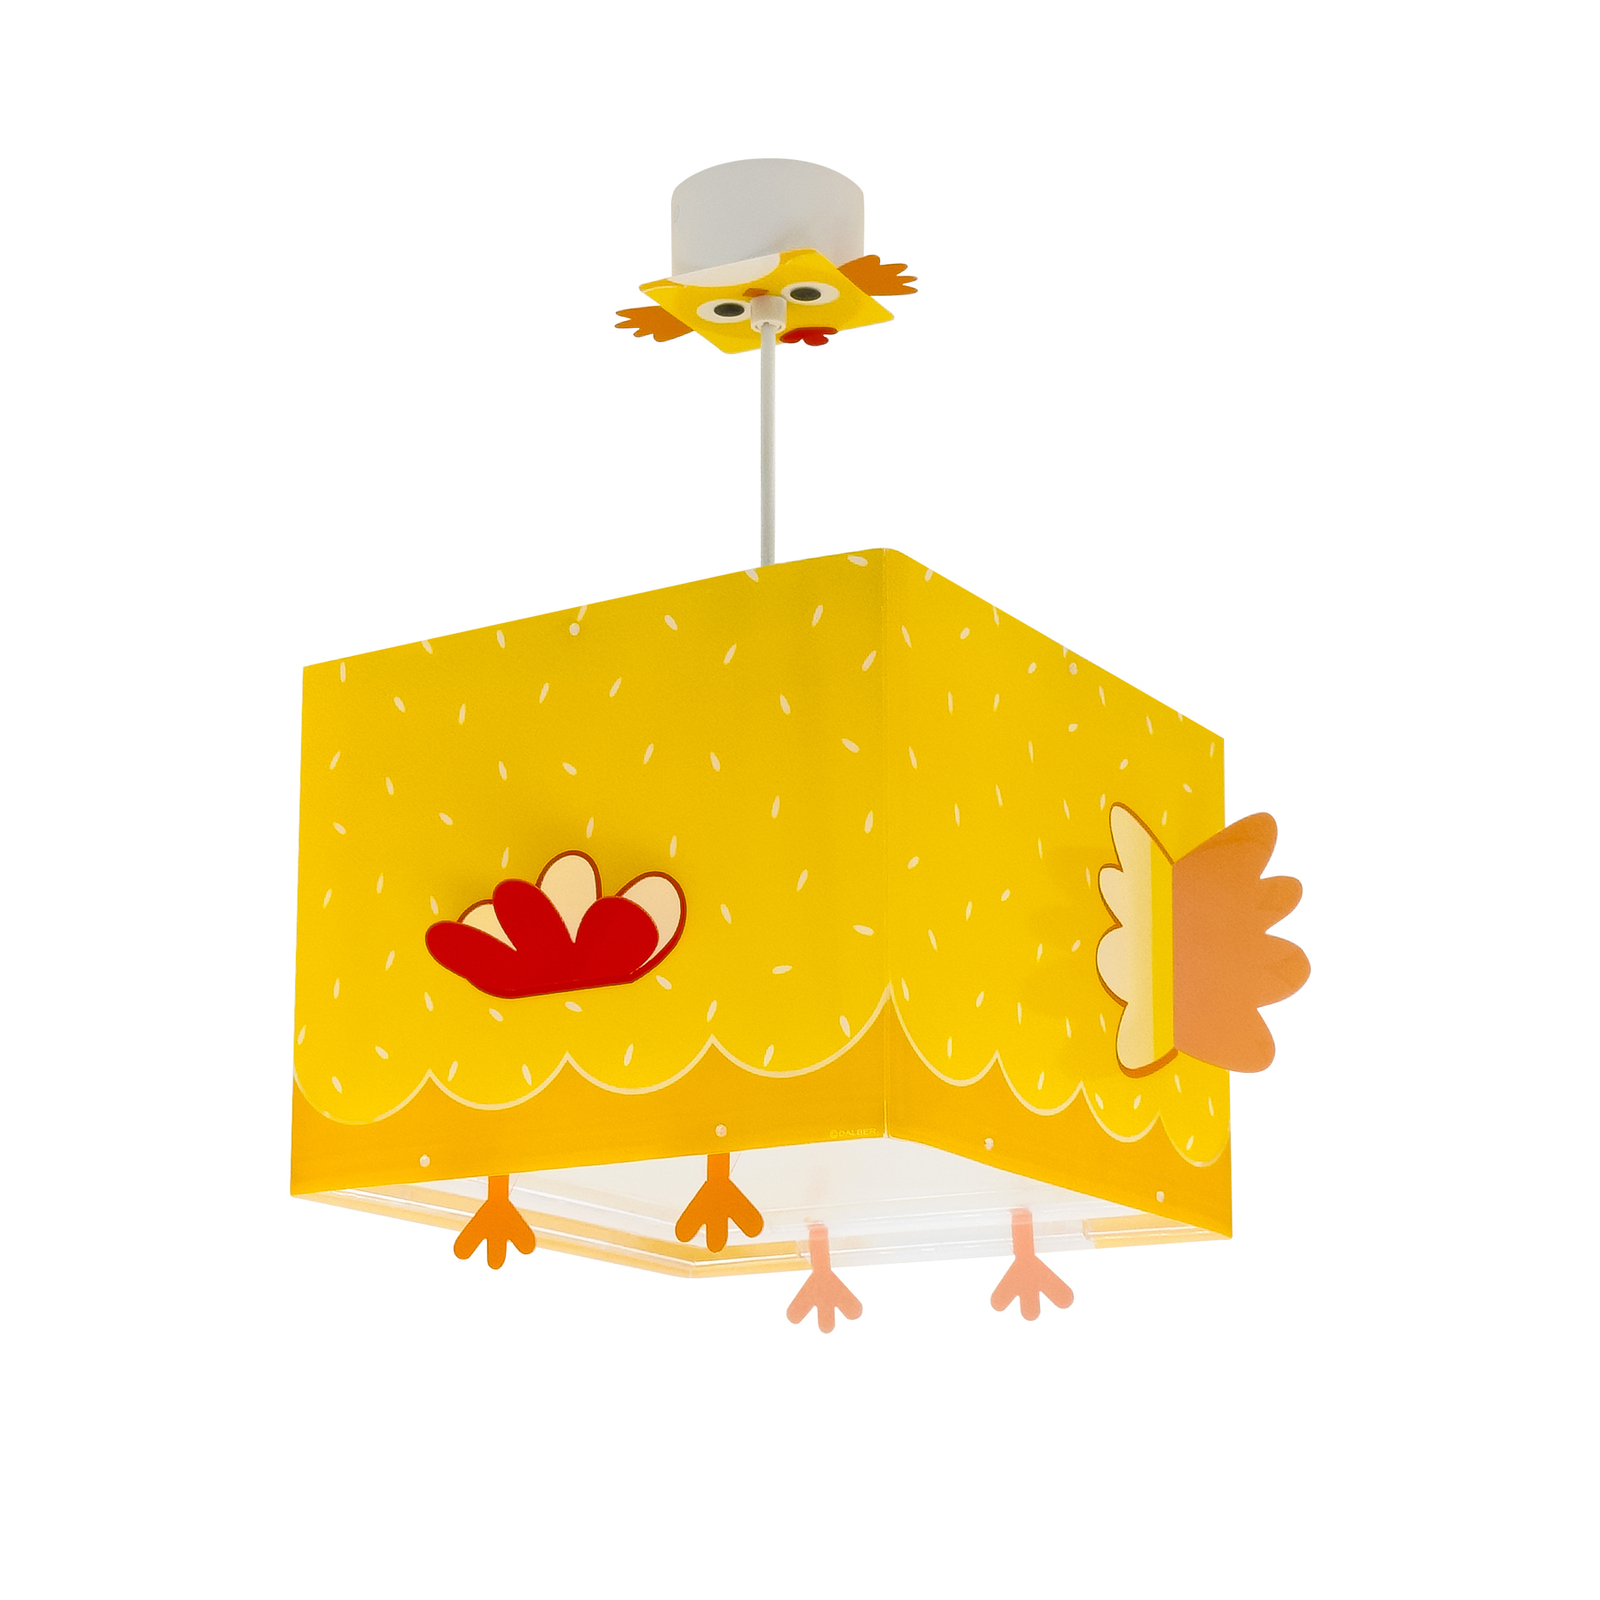 Dalber Little Chicken hanglamp voor kinderen